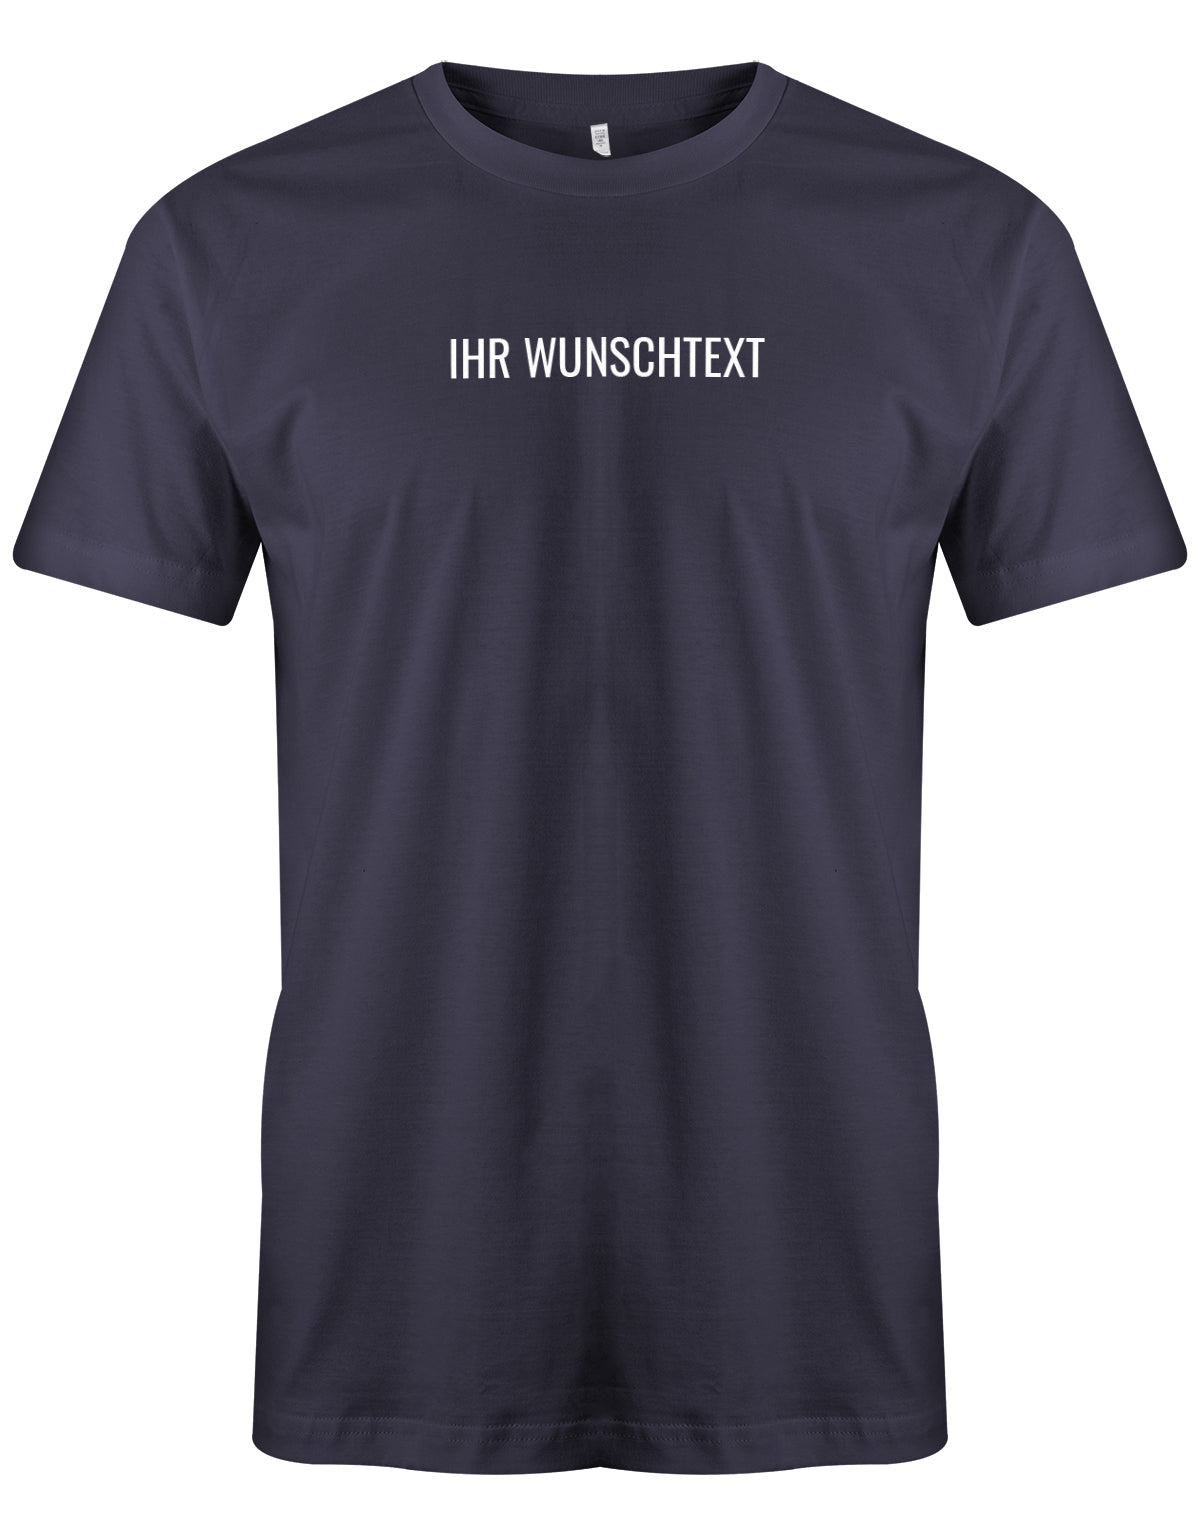 Männer Tshirt mit Wunschtext. Minimalistisches Design. Navy